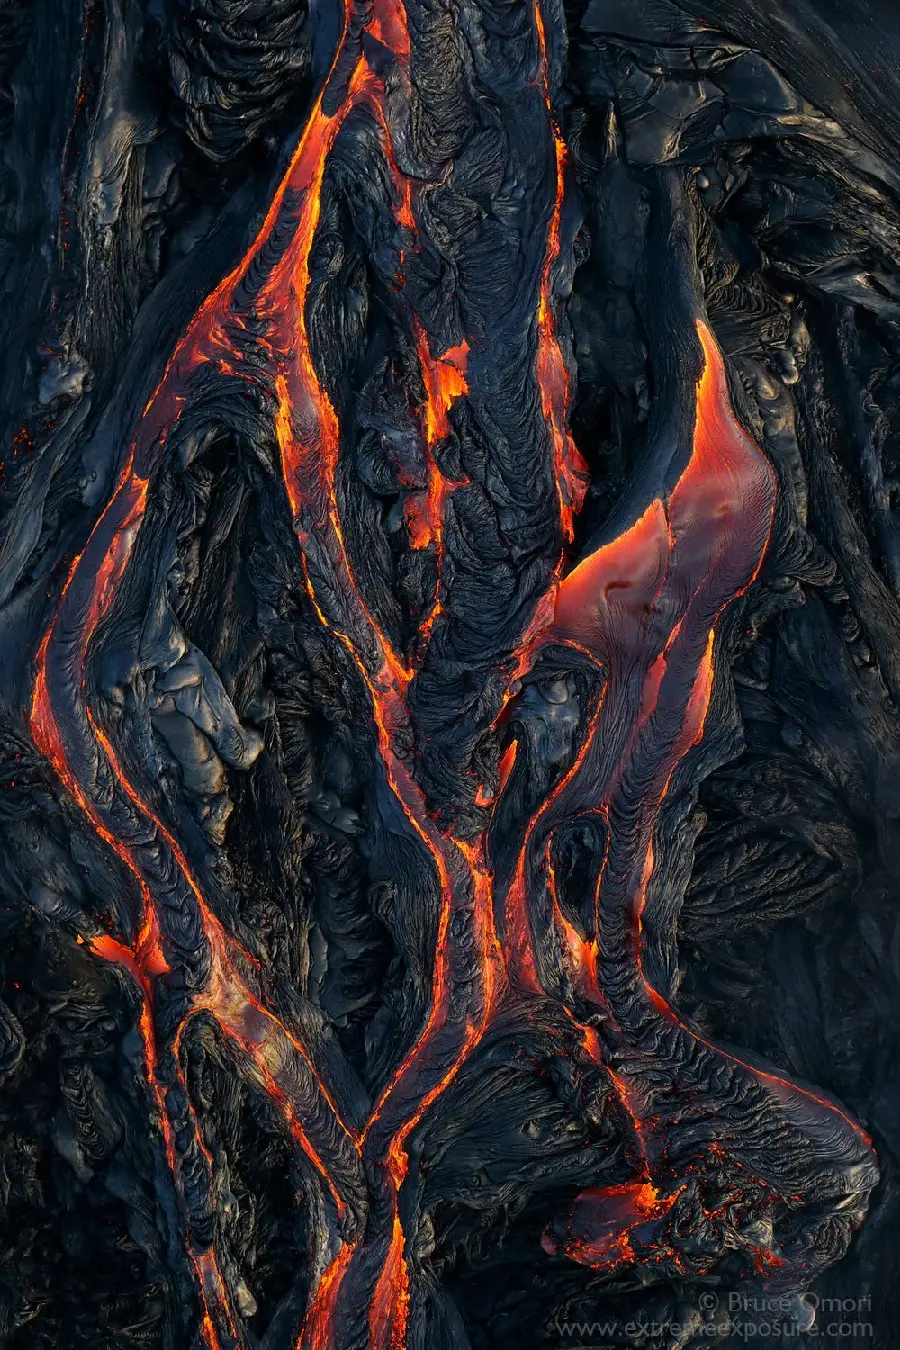  جدیدترین و ترسناک ترین تصاویر هنری از لاوا بیرون زده از آتشفشان های واقعی